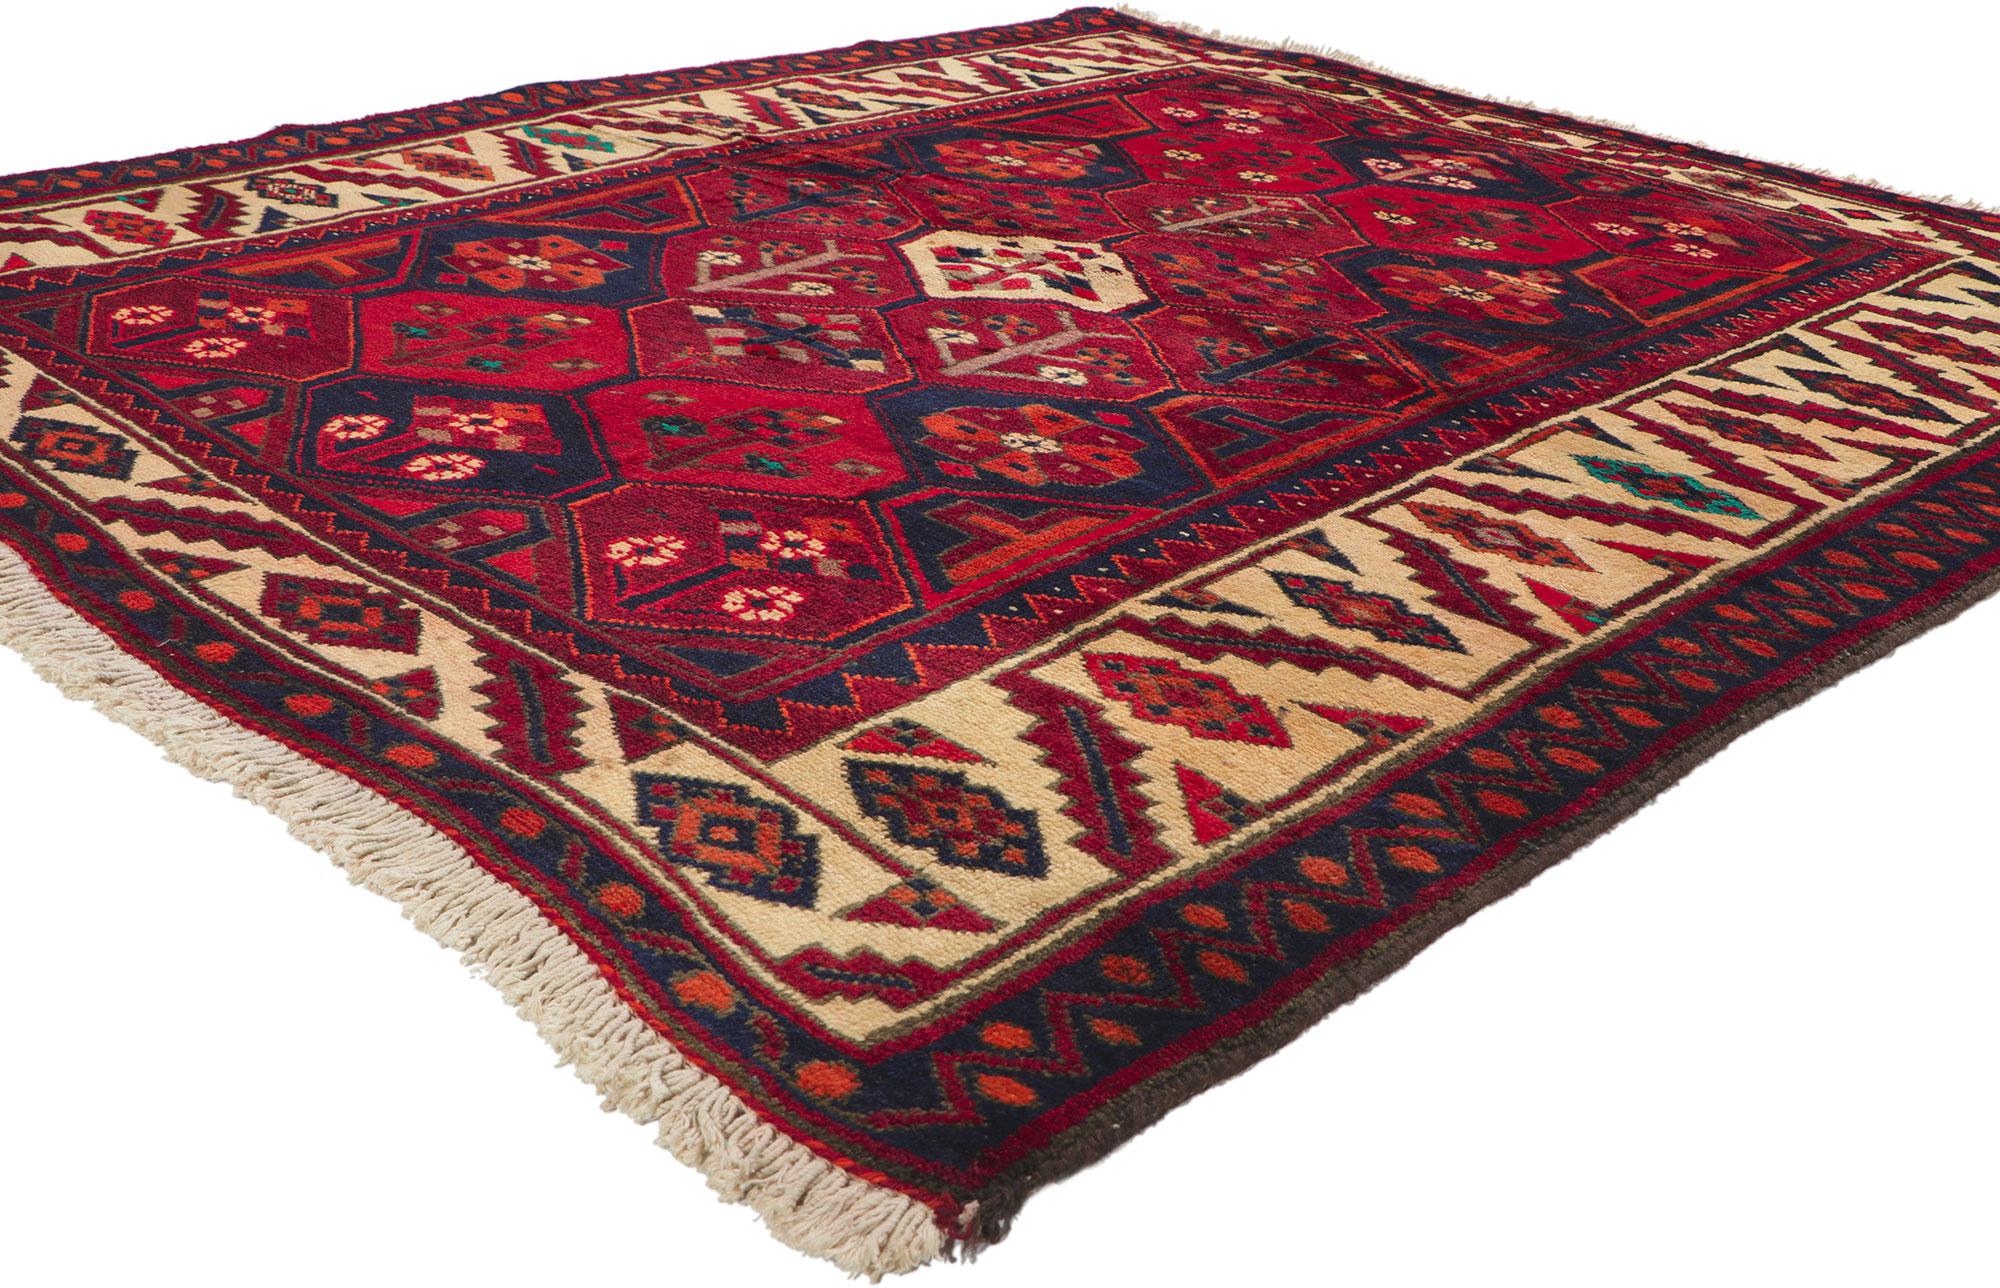 71284 Persischer Bakhtiari-Teppich im Vintage-Stil mit Garten-Design und Herrenhaus im Tudor-Stil. Dies ist ein alter handgeknüpfter persischer Bakhtiari-Teppich aus Wolle mit einem kunstvollen Medaillon in der Mitte und einem geometrischen und